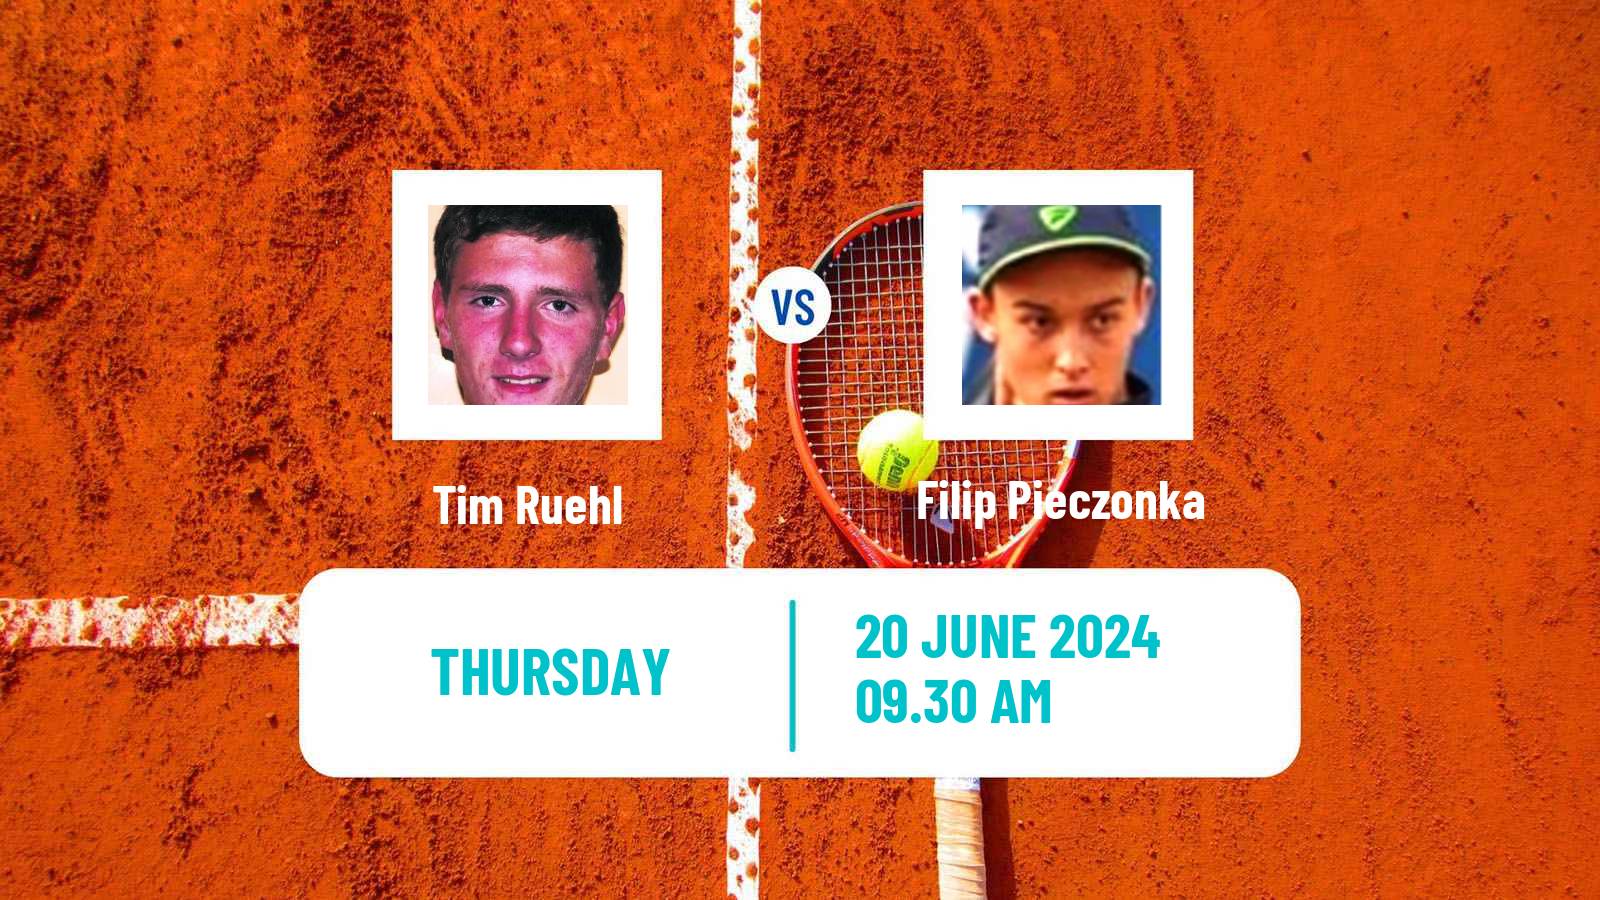 Tennis ITF M15 Koszalin 2 Men Tim Ruehl - Filip Pieczonka